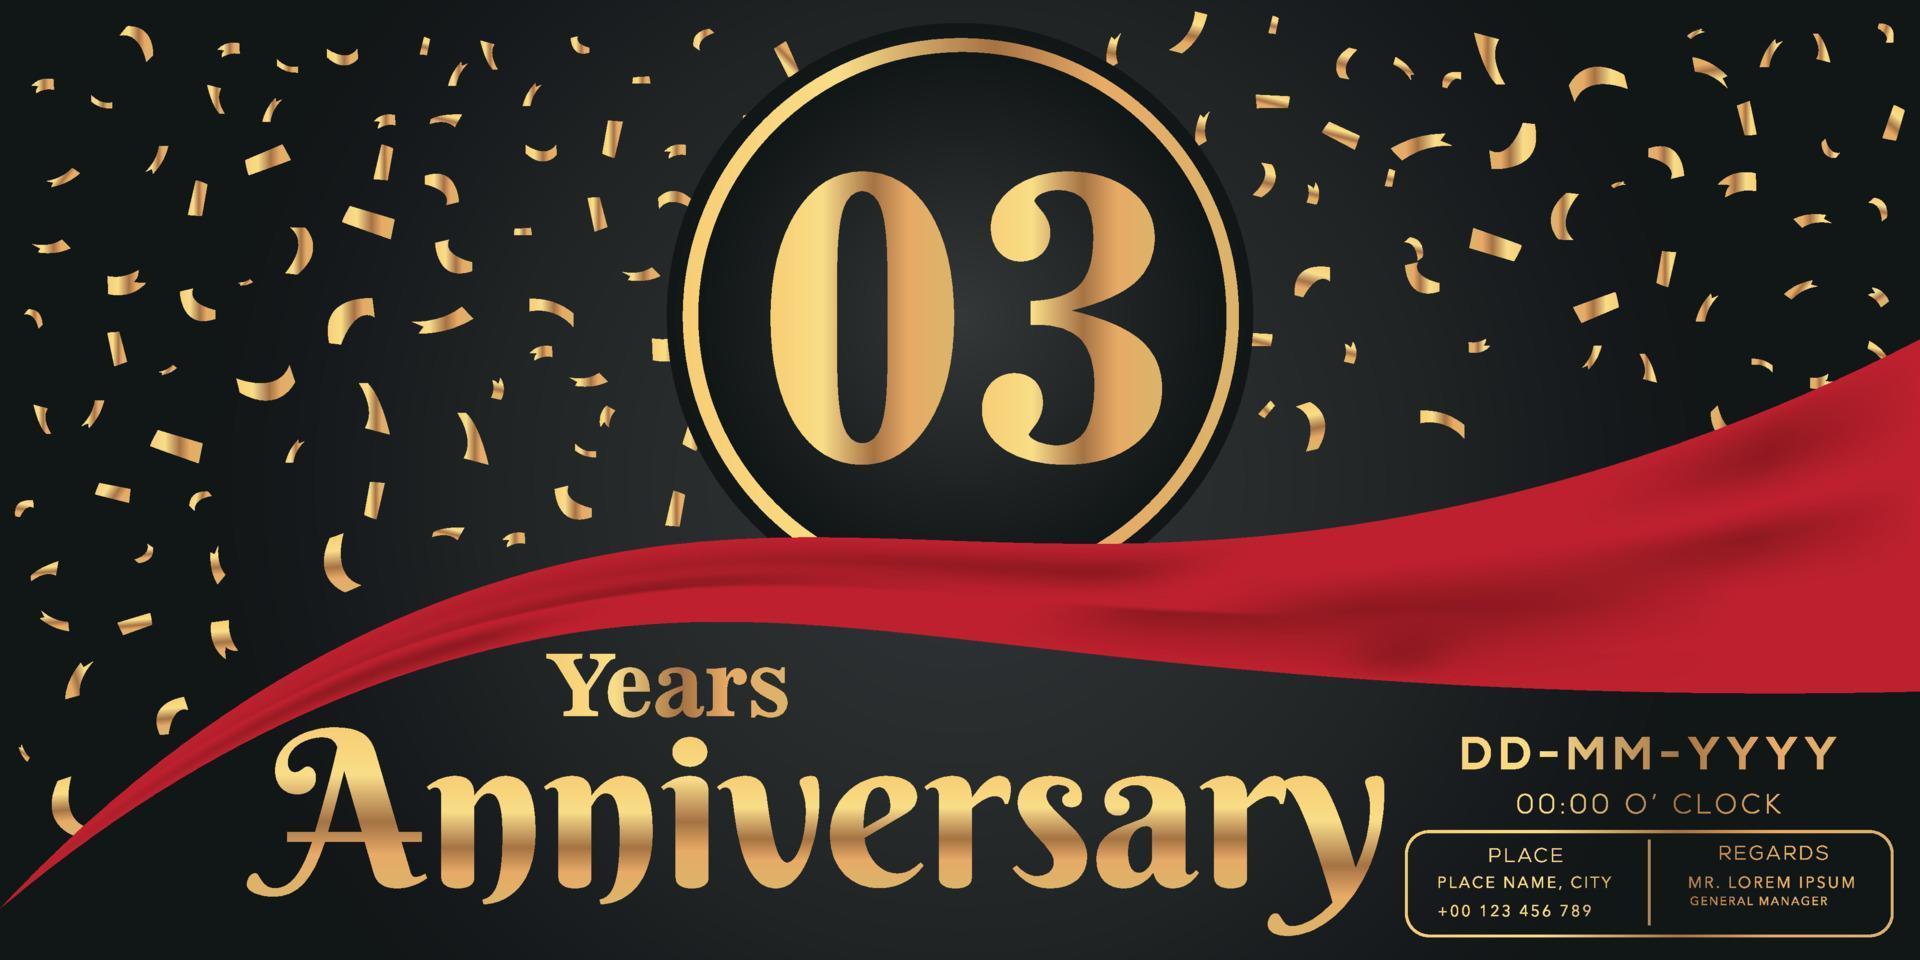 03:e år årsdag firande logotyp på mörk bakgrund med gyllene tal och gyllene abstrakt konfetti vektor design